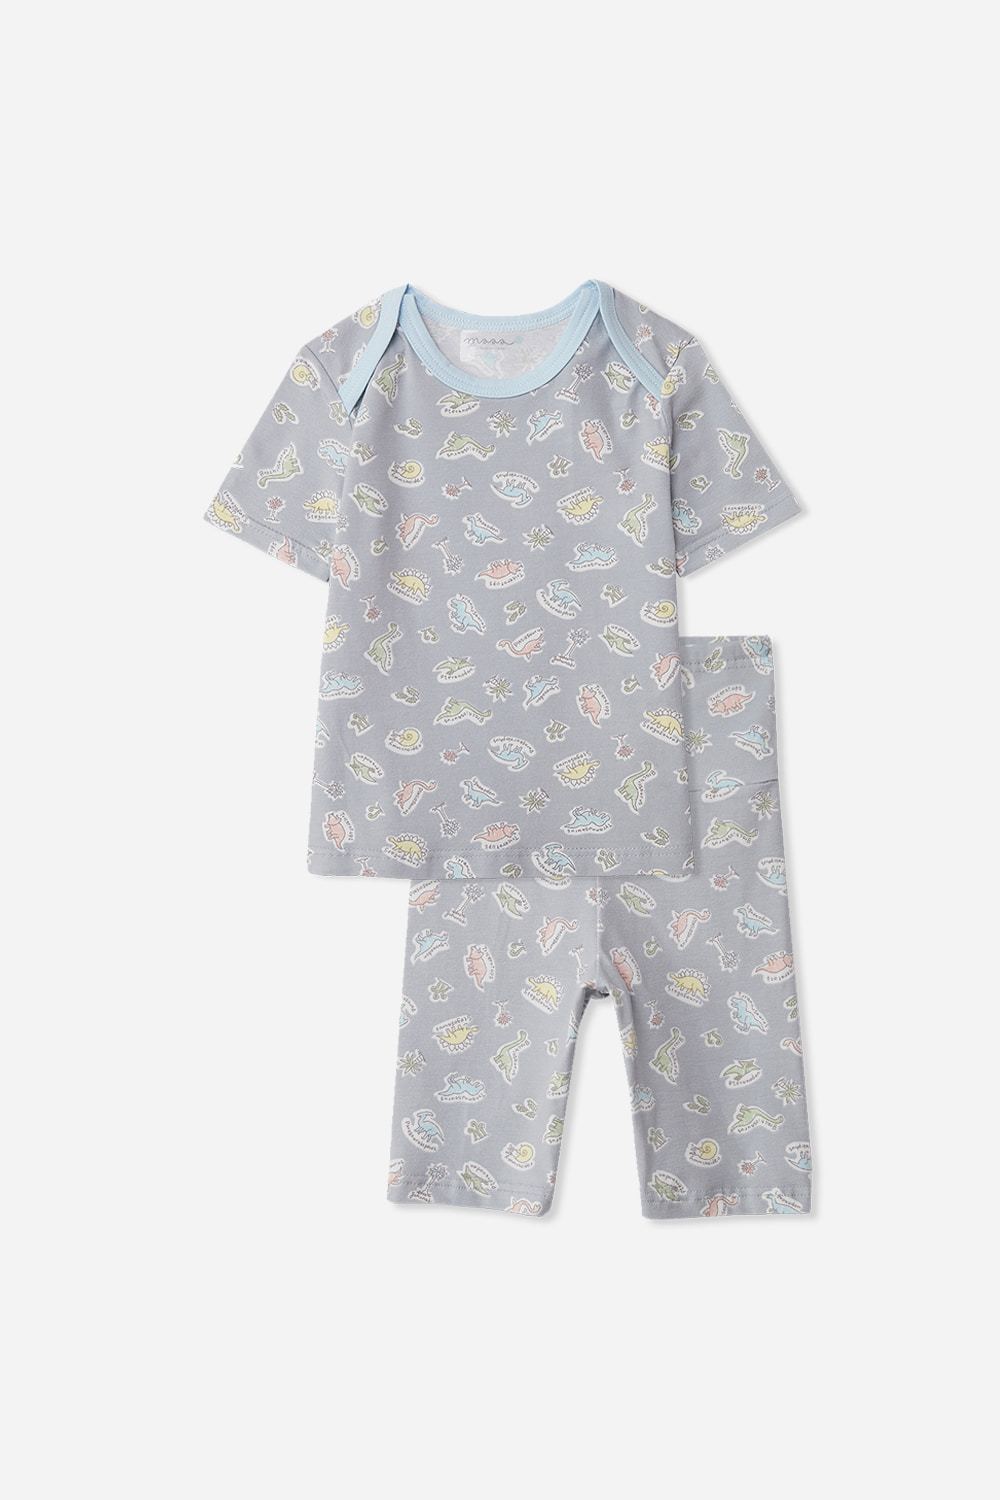 공룡월드 베이비-5부잠옷, 홈웨어, 아동내복, 아동속옷,성인잠옷,고후나비